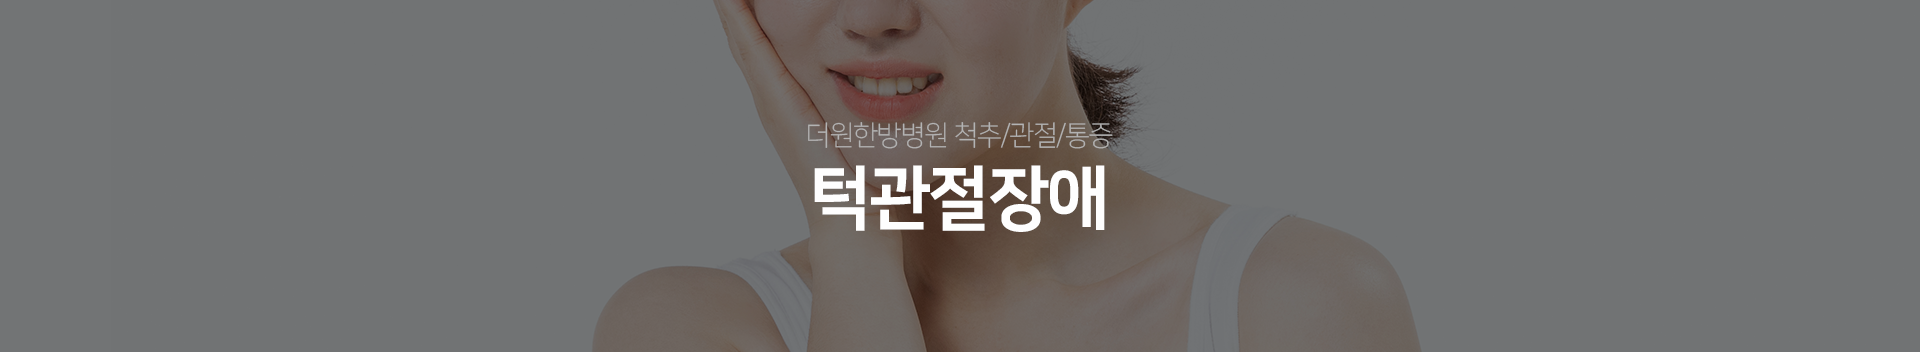 더원한방병원-척추/관절/통증-턱관절장애